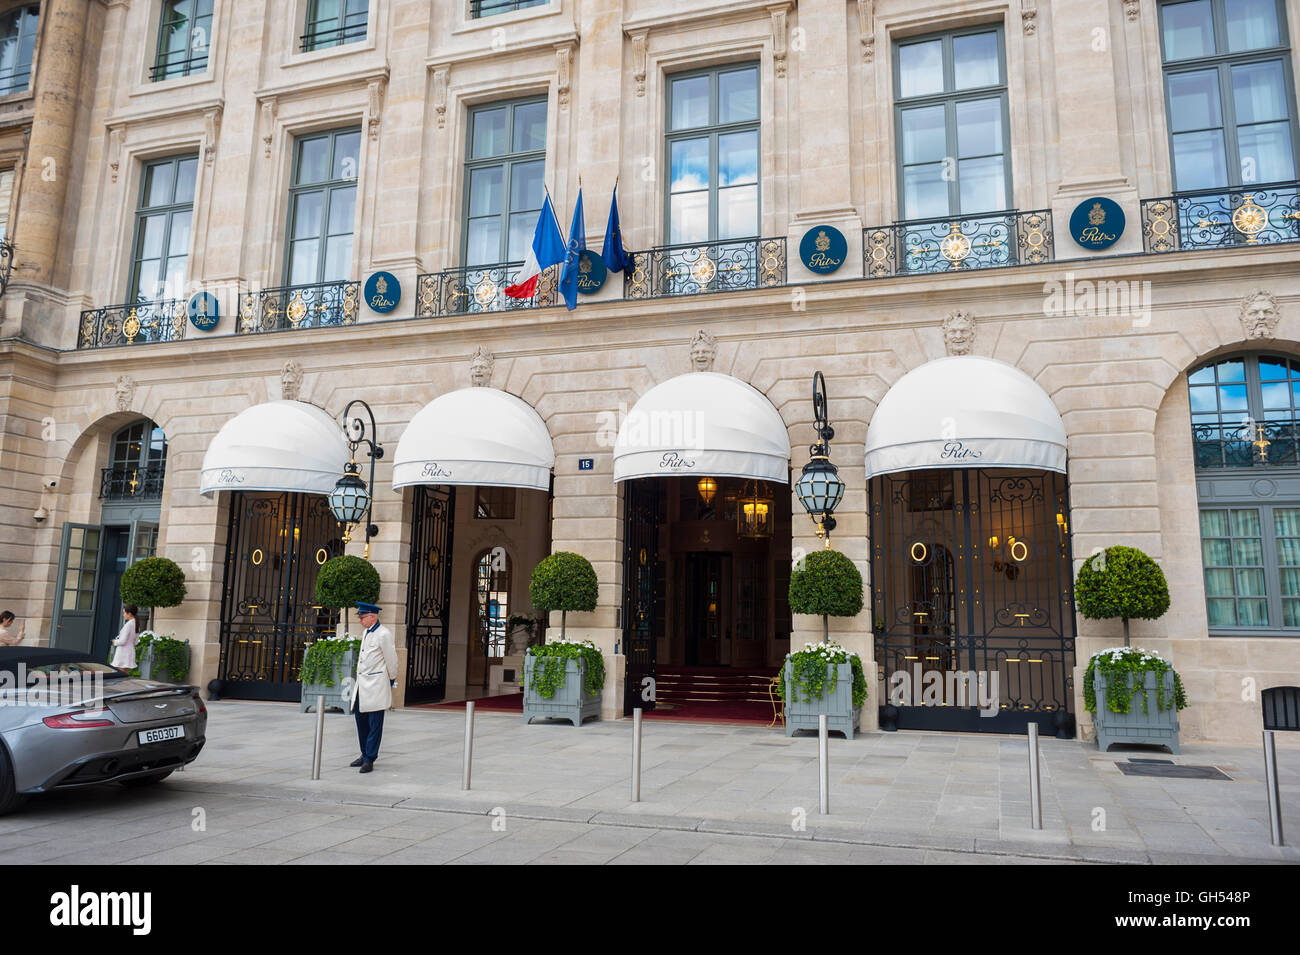 The Ritz Hotel, Place Vendome, Paris, France Stock Photo - Alamy